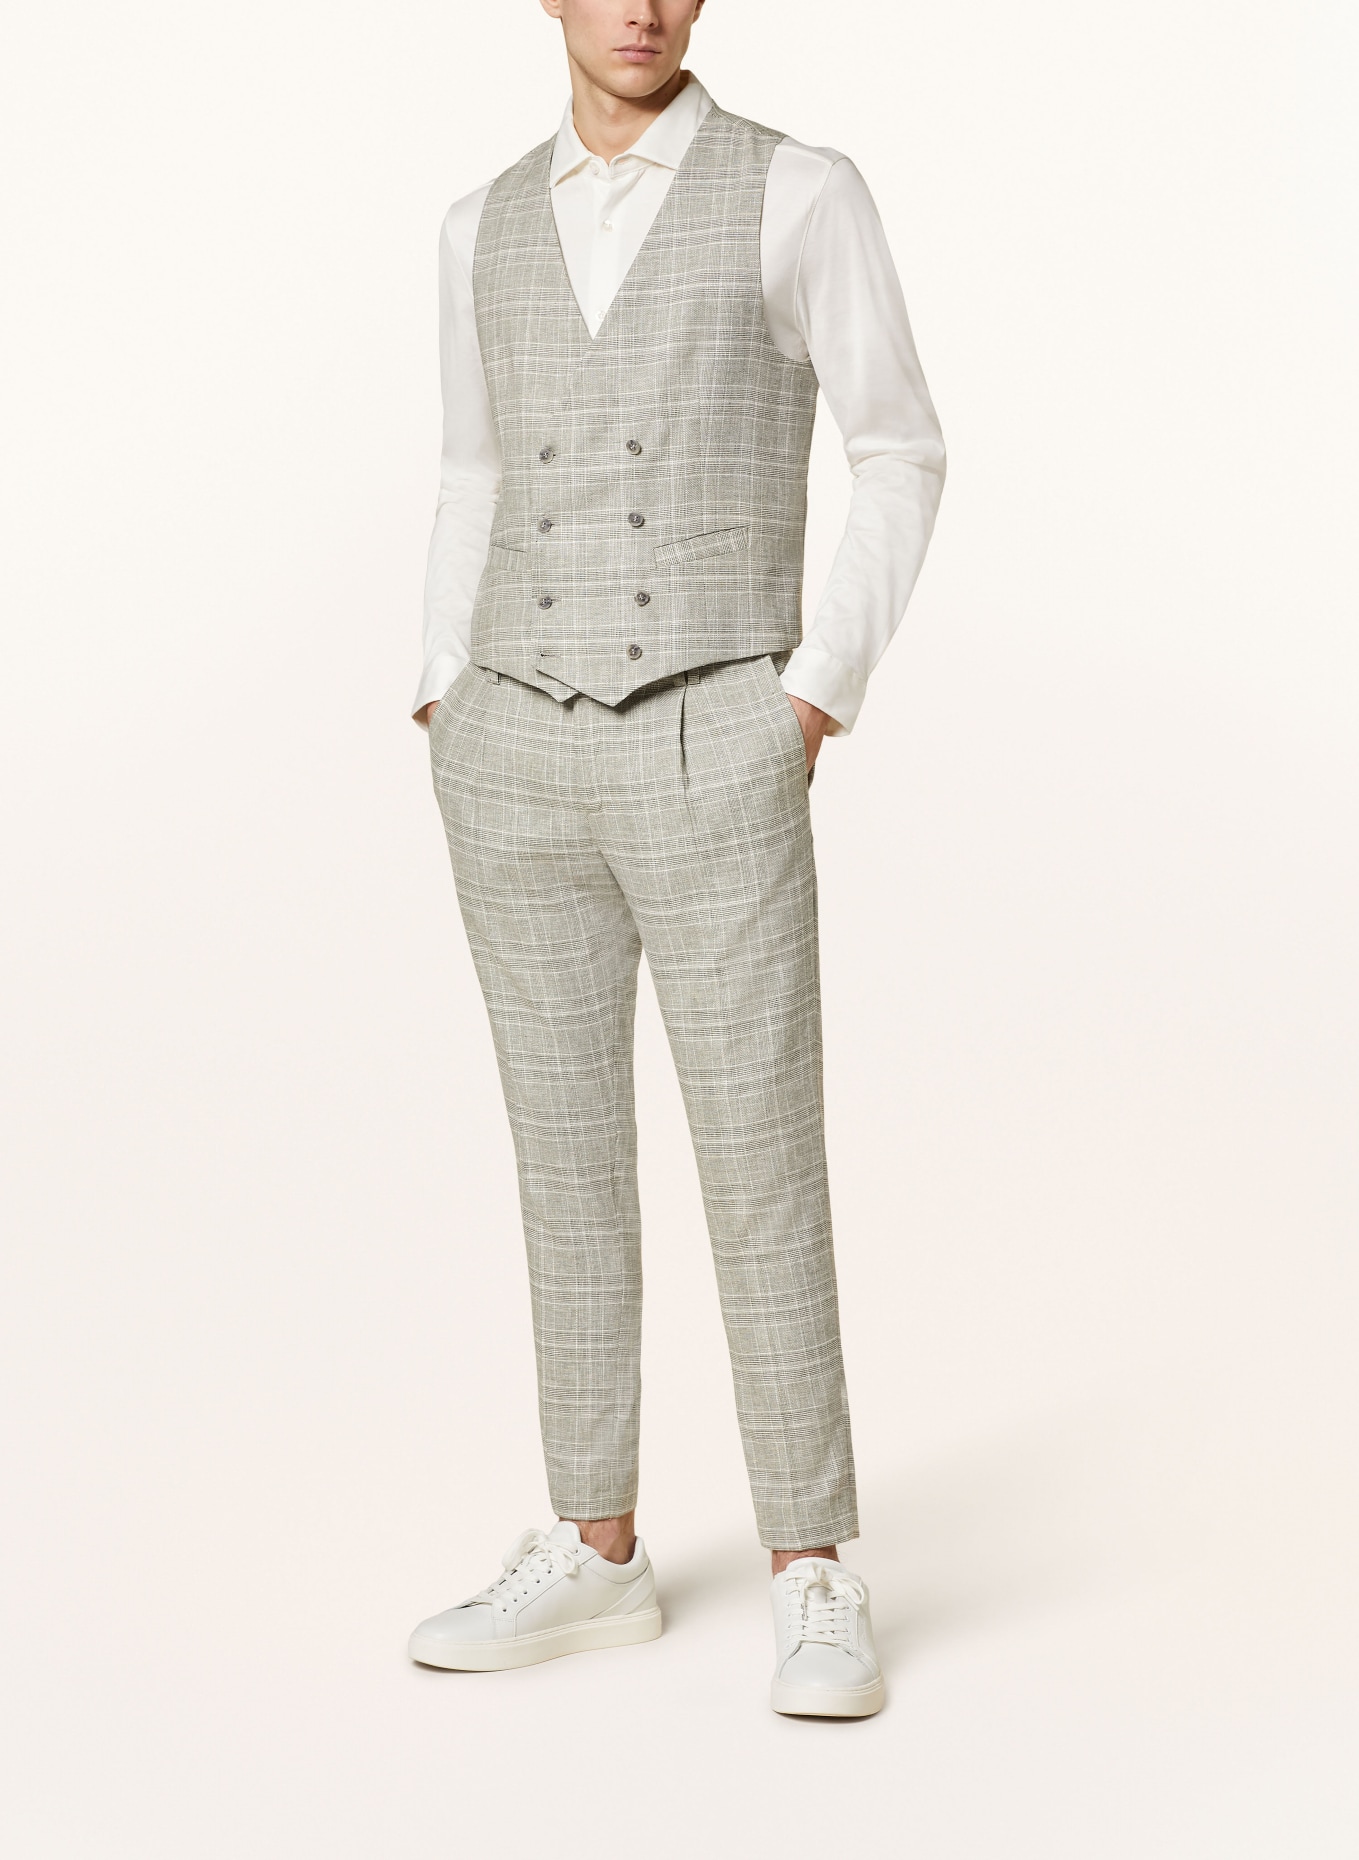 CINQUE Suit vest CIVOLTA regular fit, Color: 82 hellgrUEn (Image 3)